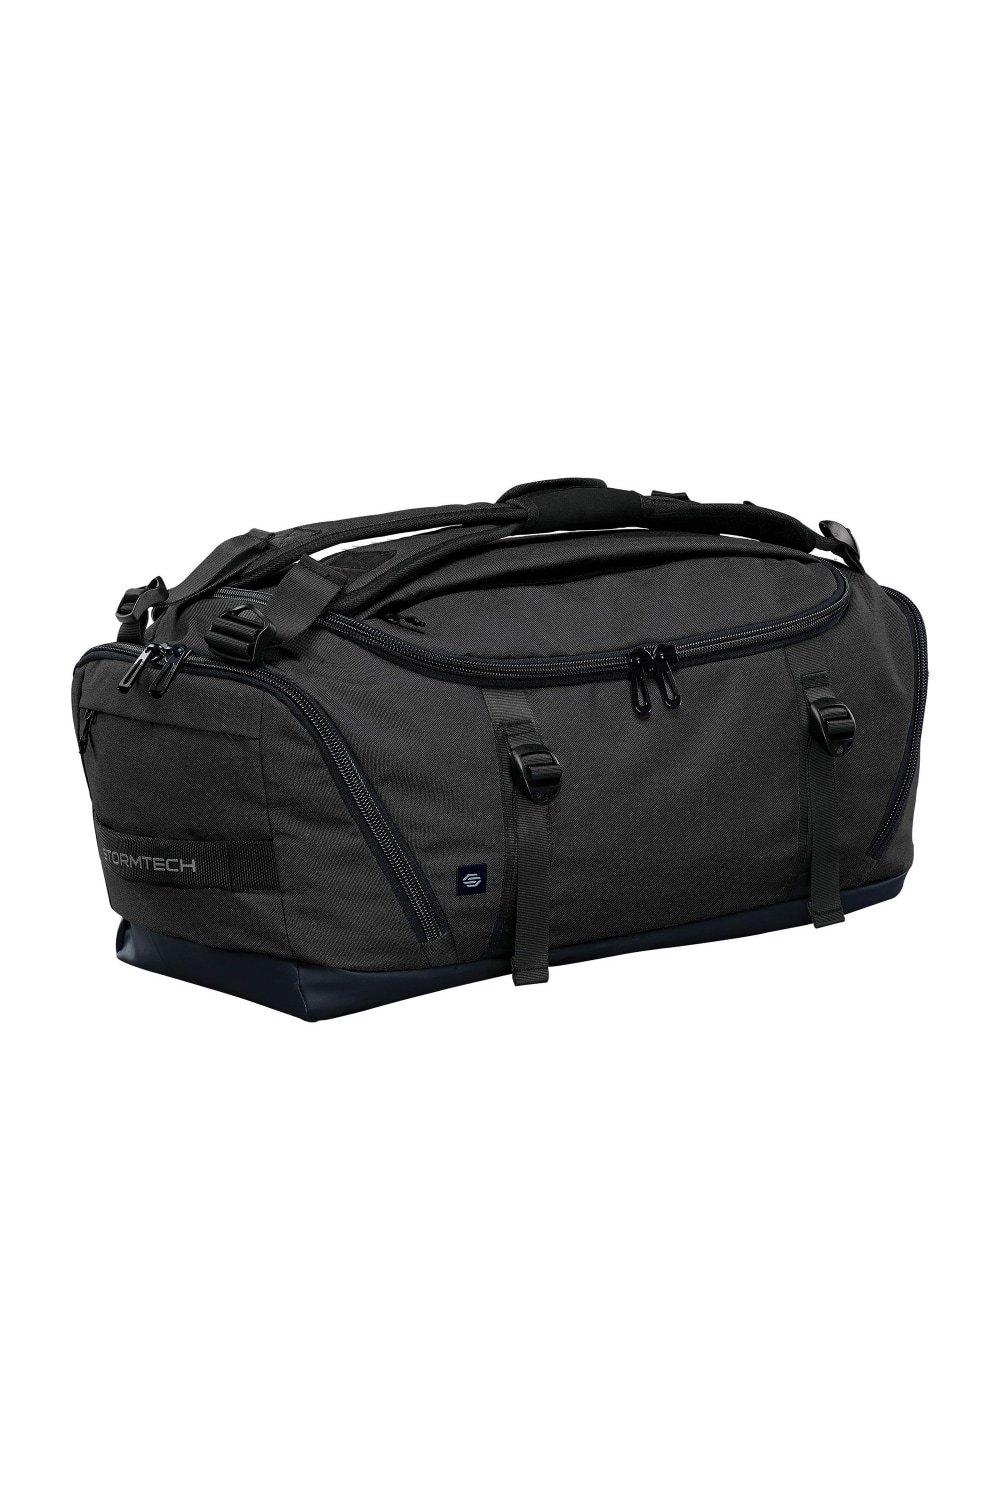 Спортивная сумка Equinox 30 Stormtech, черный